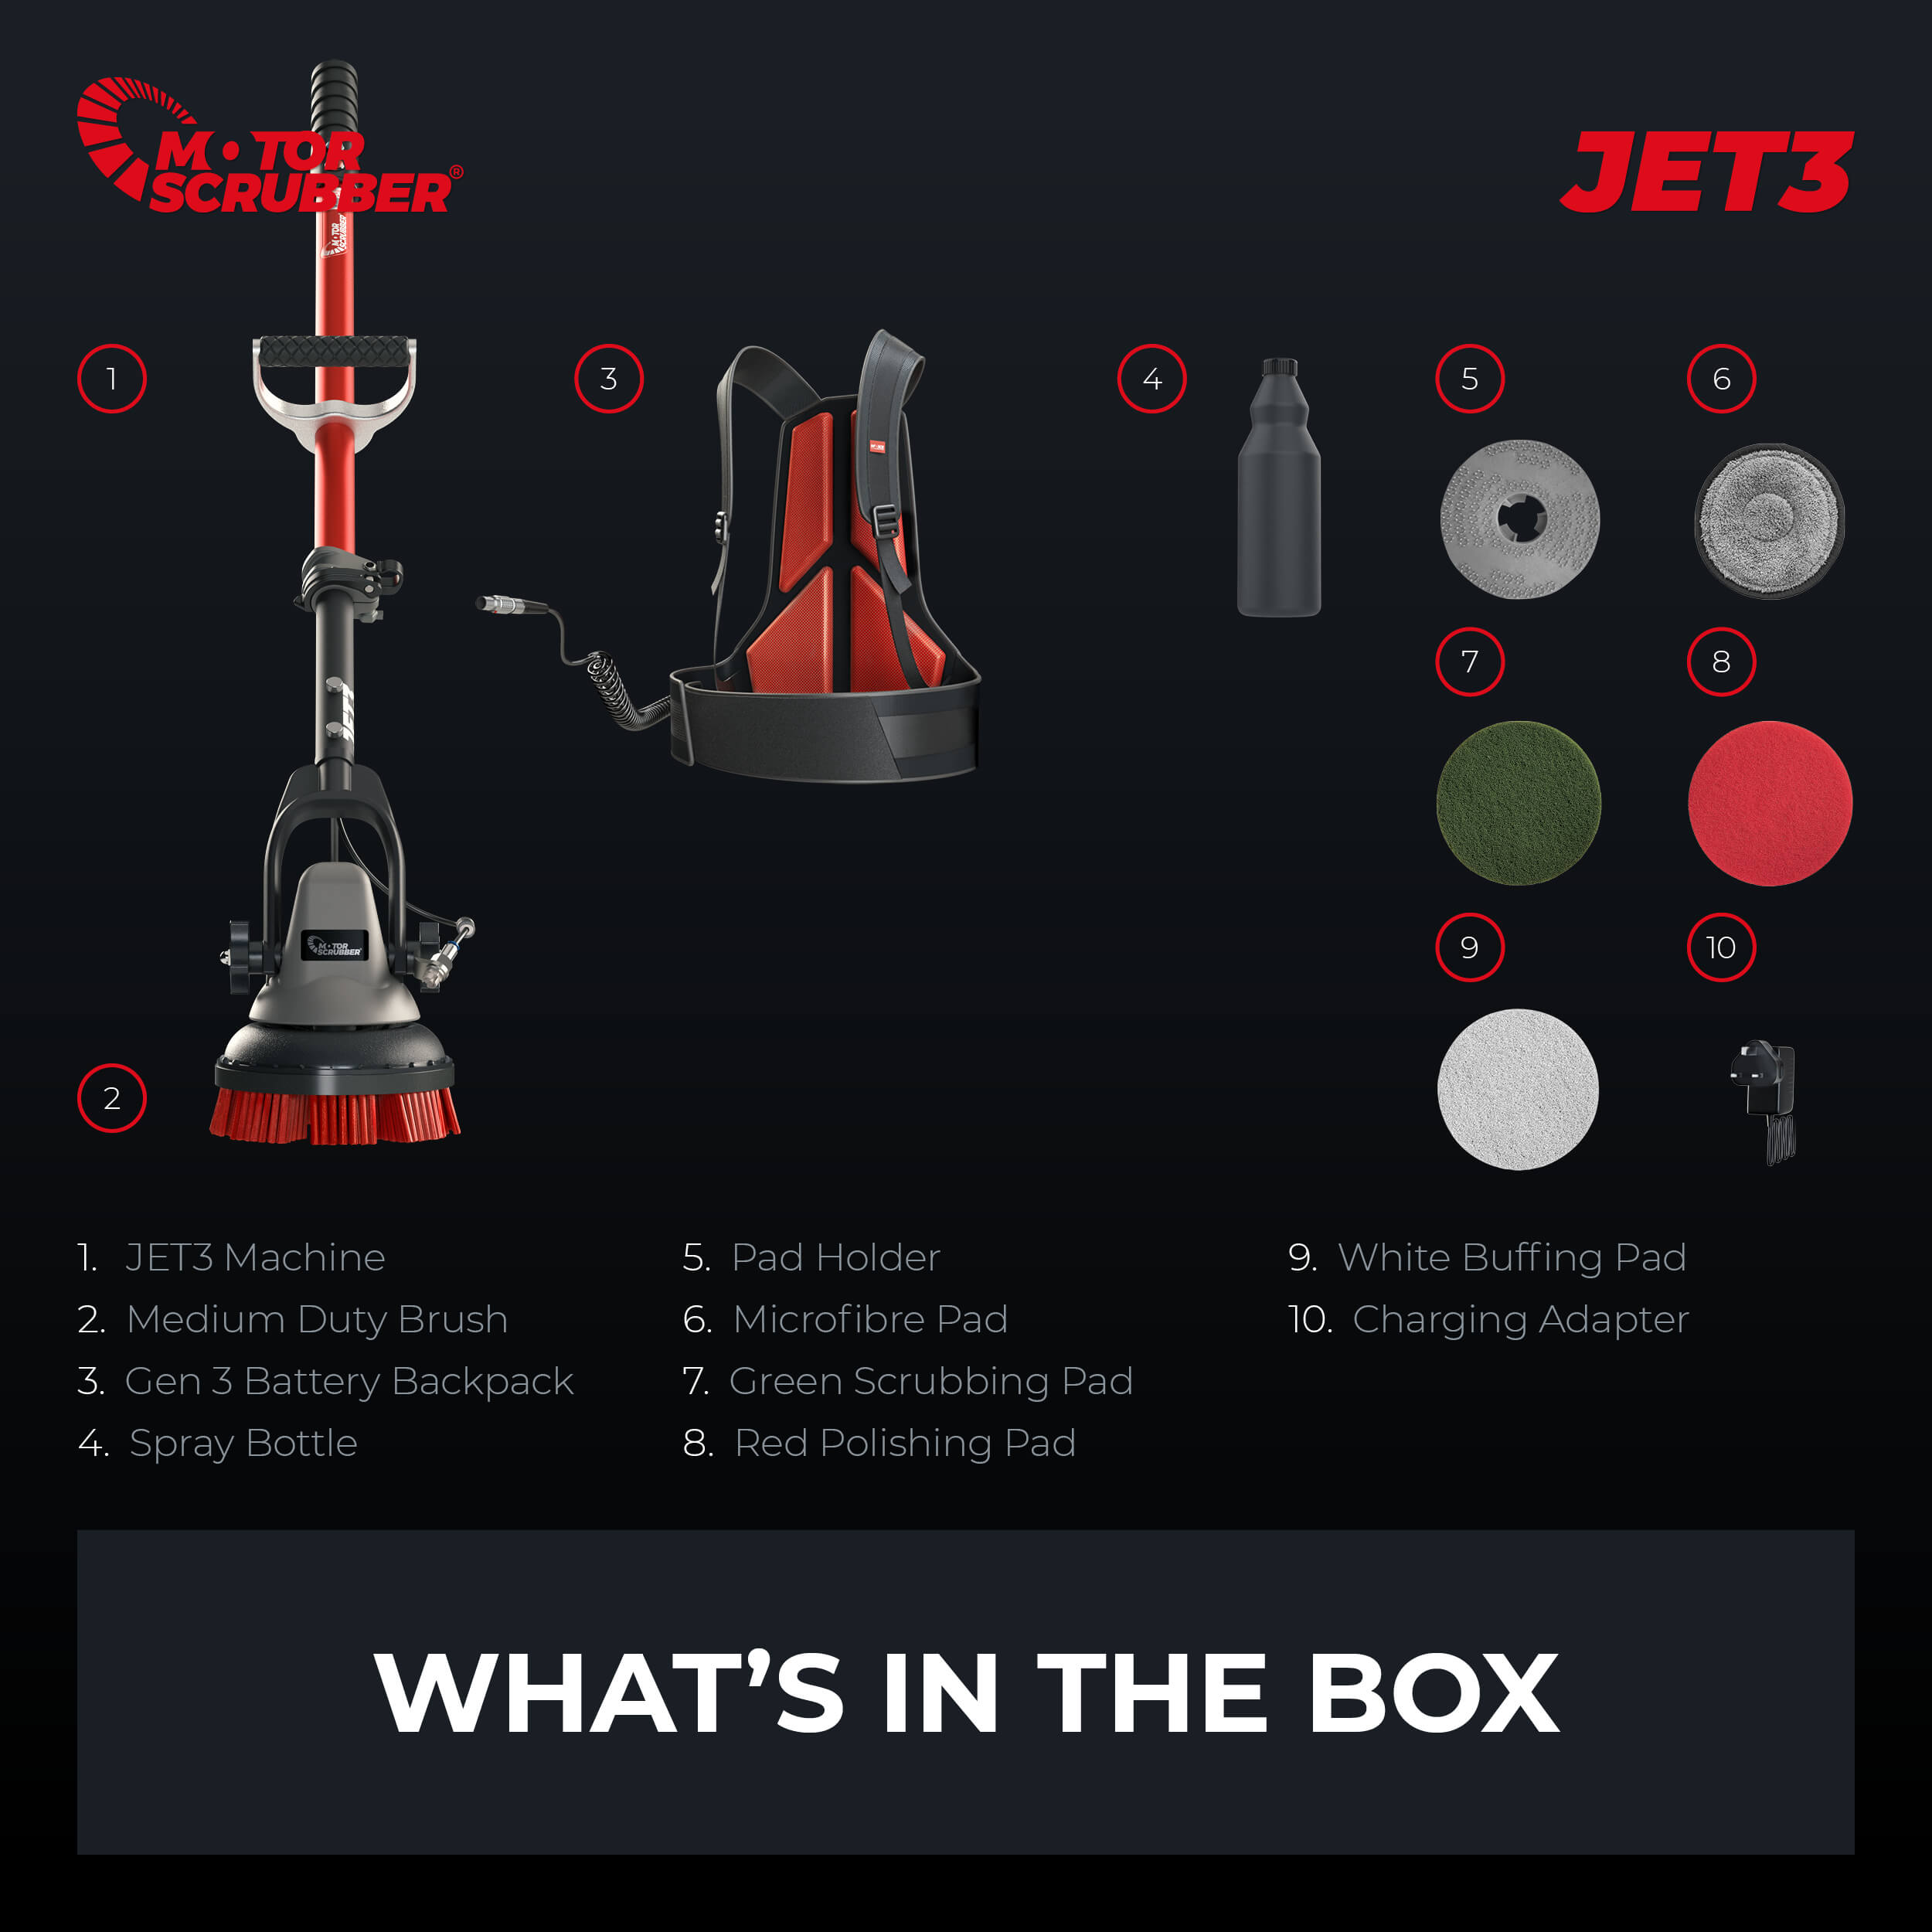 MotorScrubber Jet Starter Kit